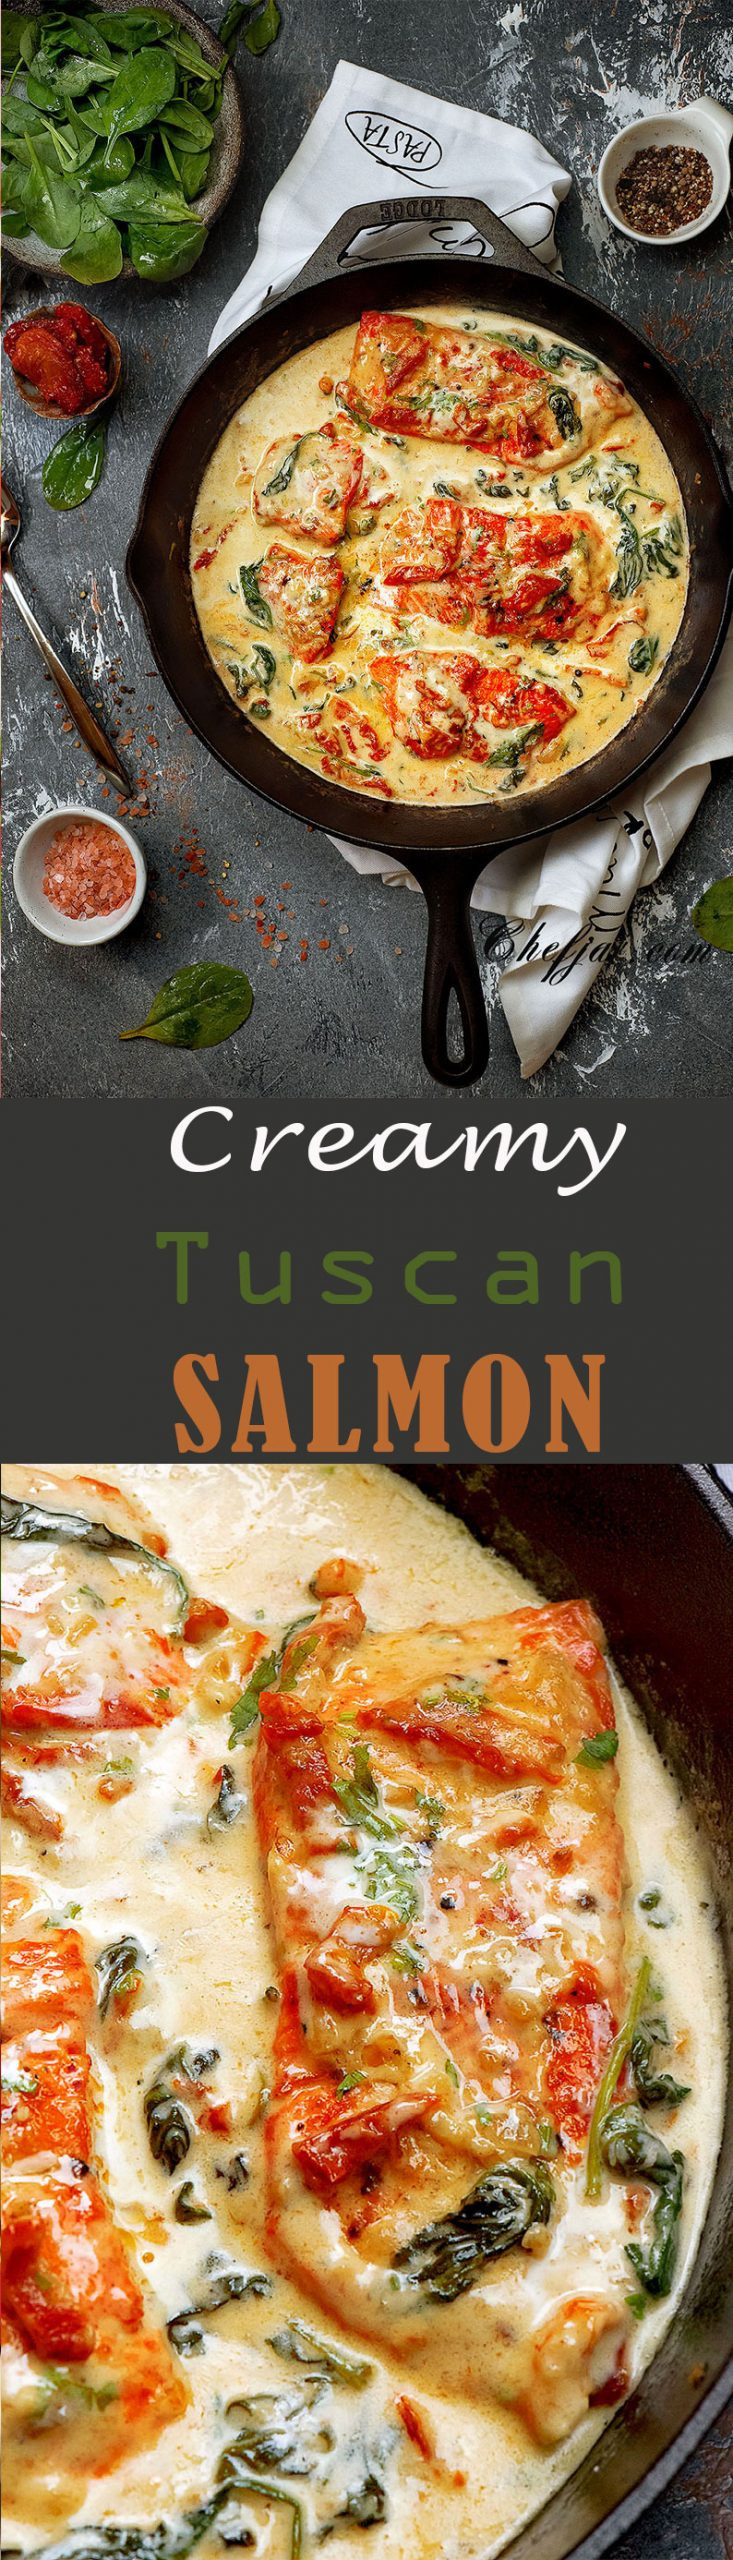 Creamy Tuscan Salmon Keto
 CREAMY GARLIC TUSCAN SALMON